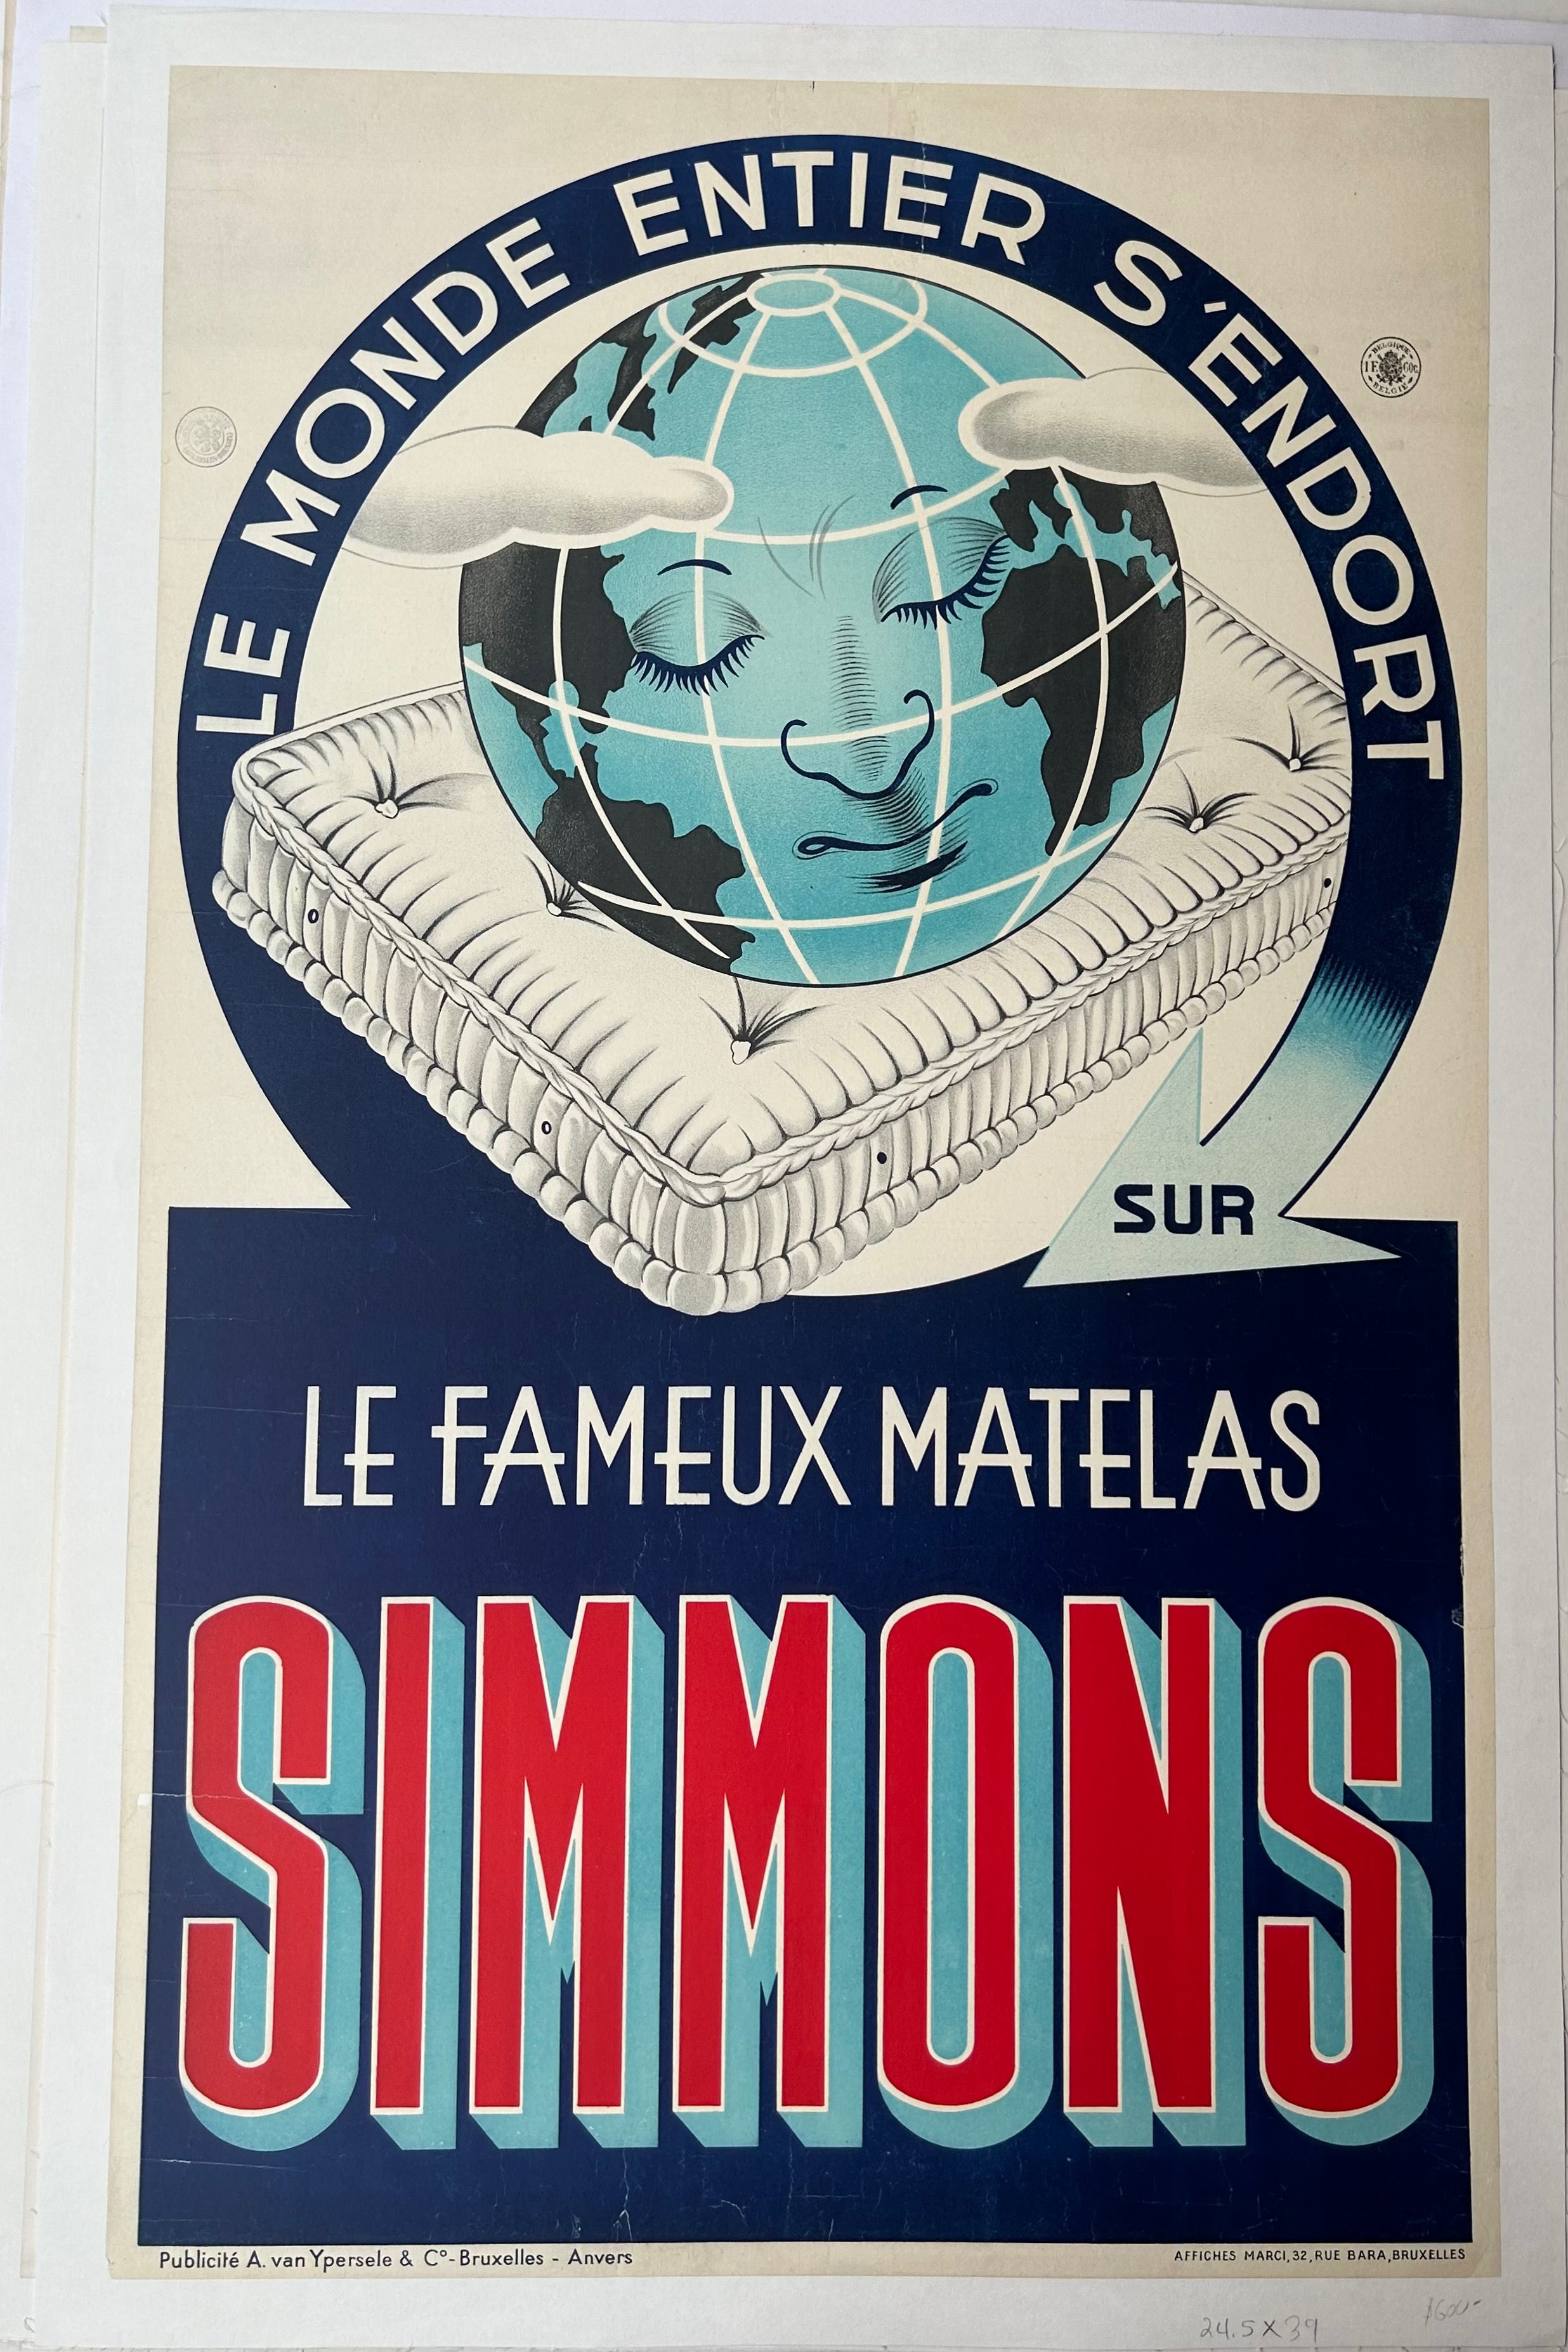 Le Fameux Matelas Simmons Poster